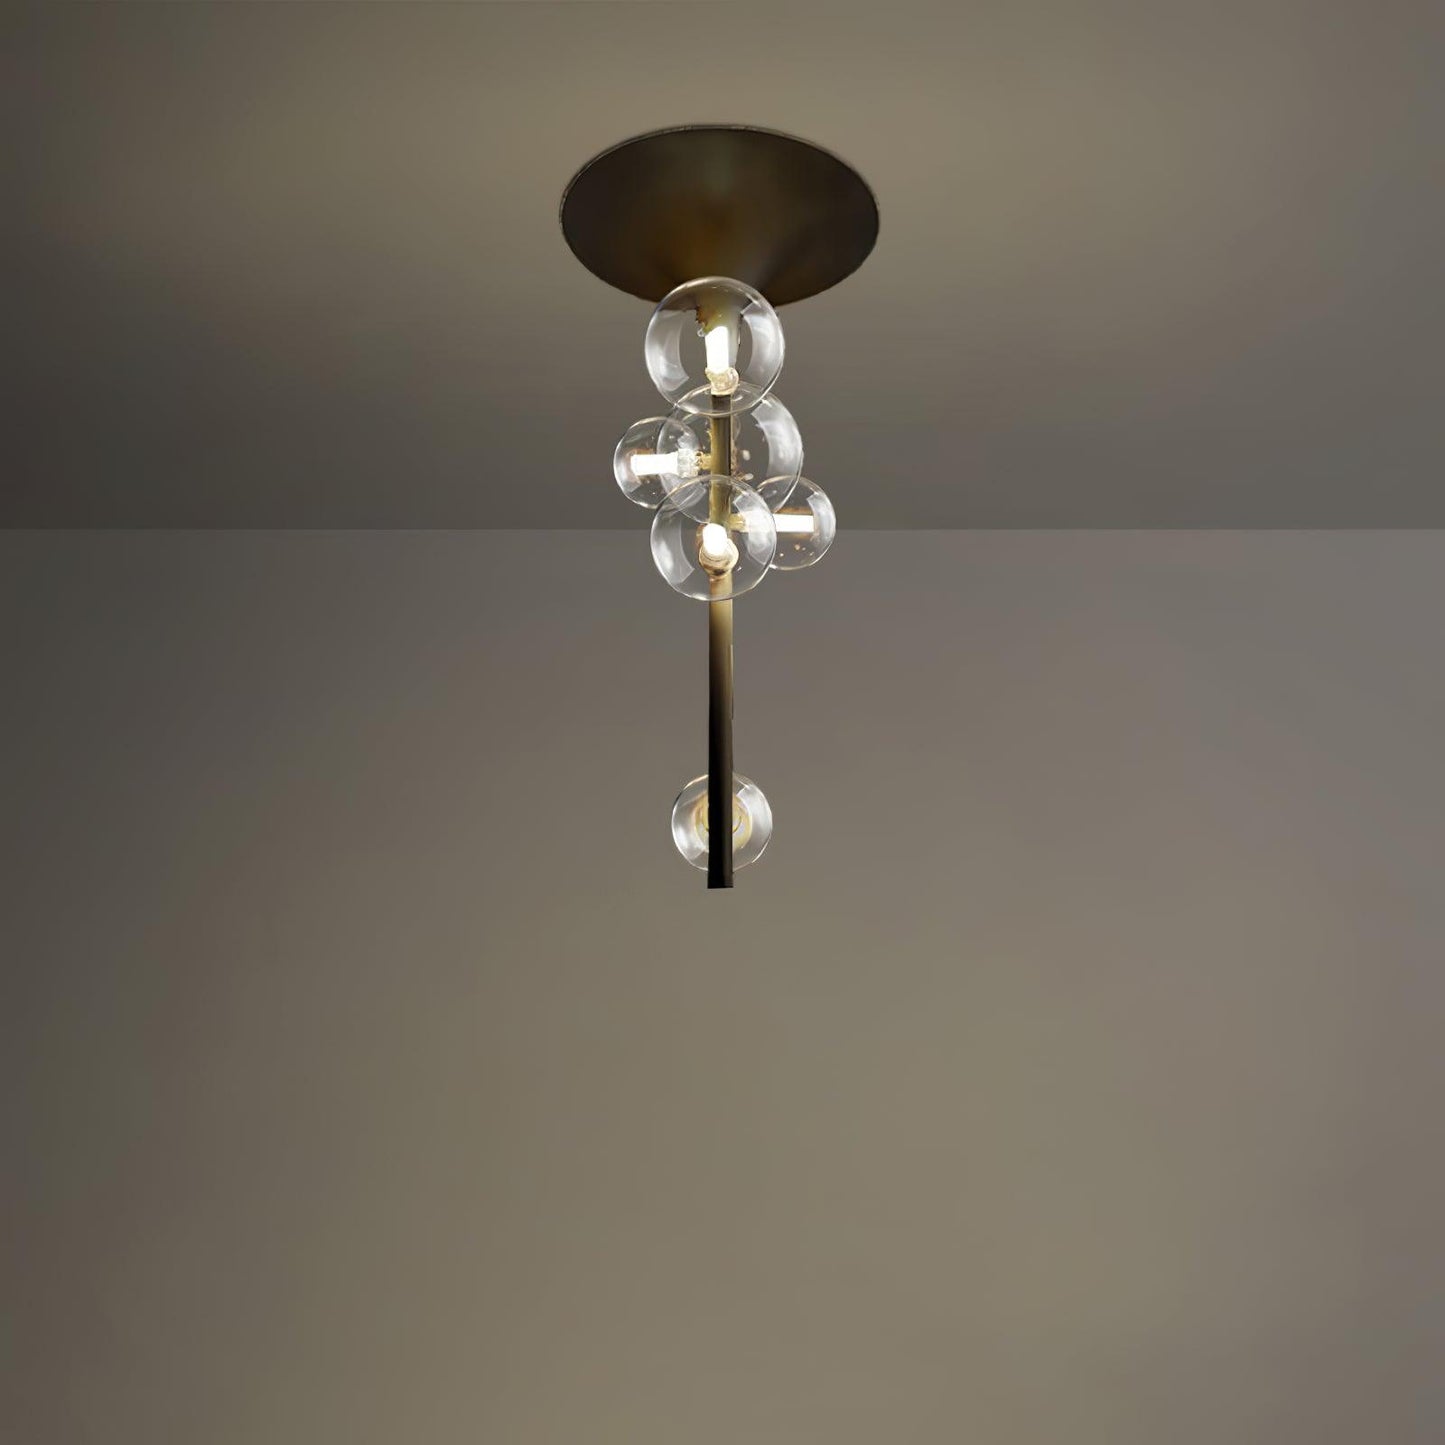 Hermann Horn Ceiling Light